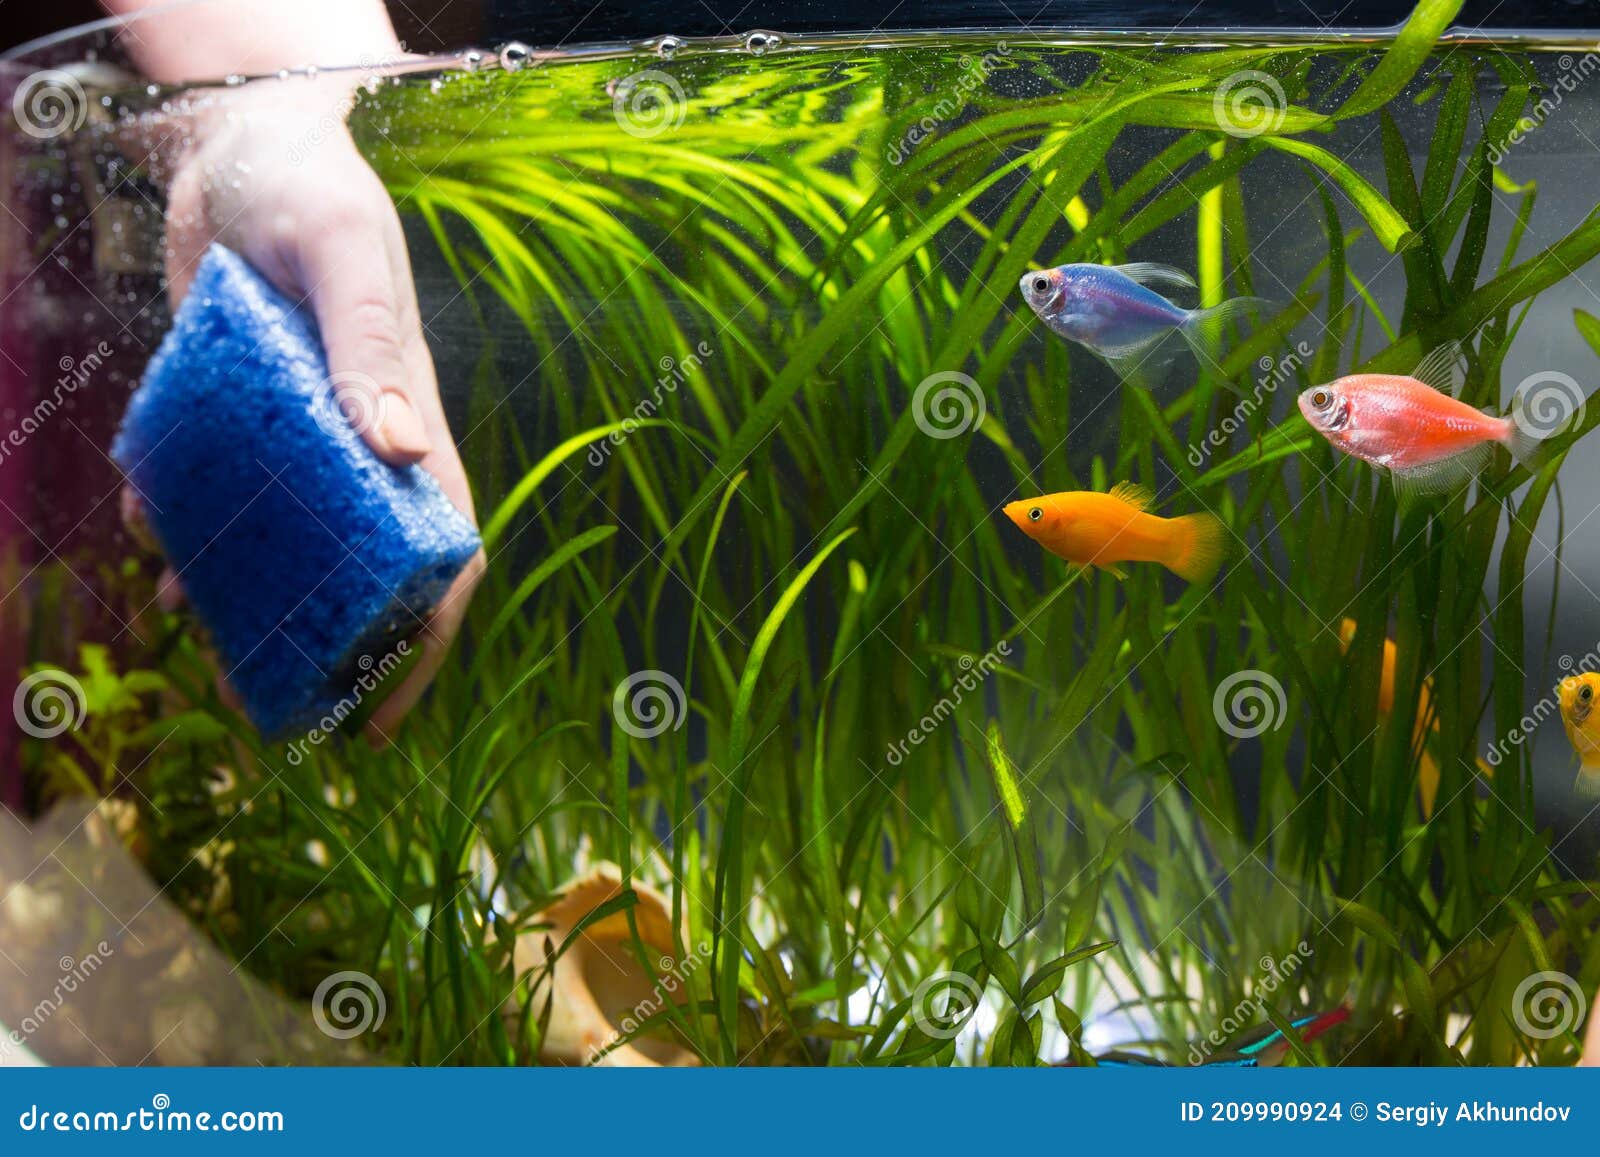 Primitief Voeding kop Clean Aquarium with Sponge. Aquarium Servise. Rools of Keeping Aquarium  Fishes Stock Photo - Image of nature, cleaner: 209990924